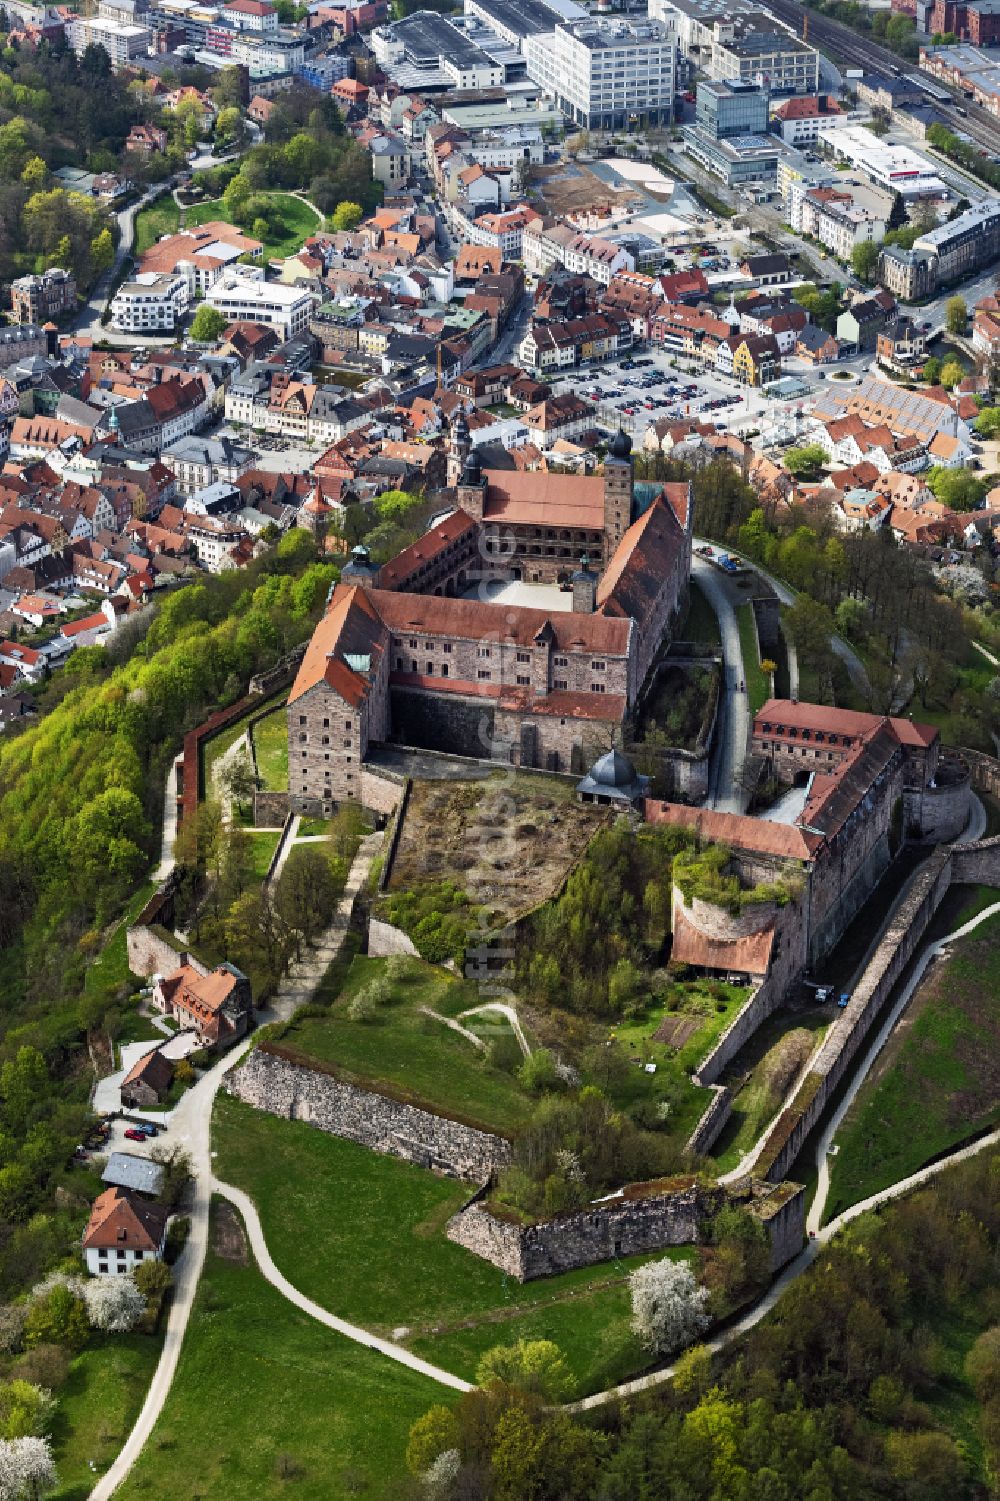 Luftbild Kulmbach - Burganlage der Veste Plassenburg und Altstadt von Kulmbach in Kulmbach im Bundesland Bayern, Deutschland